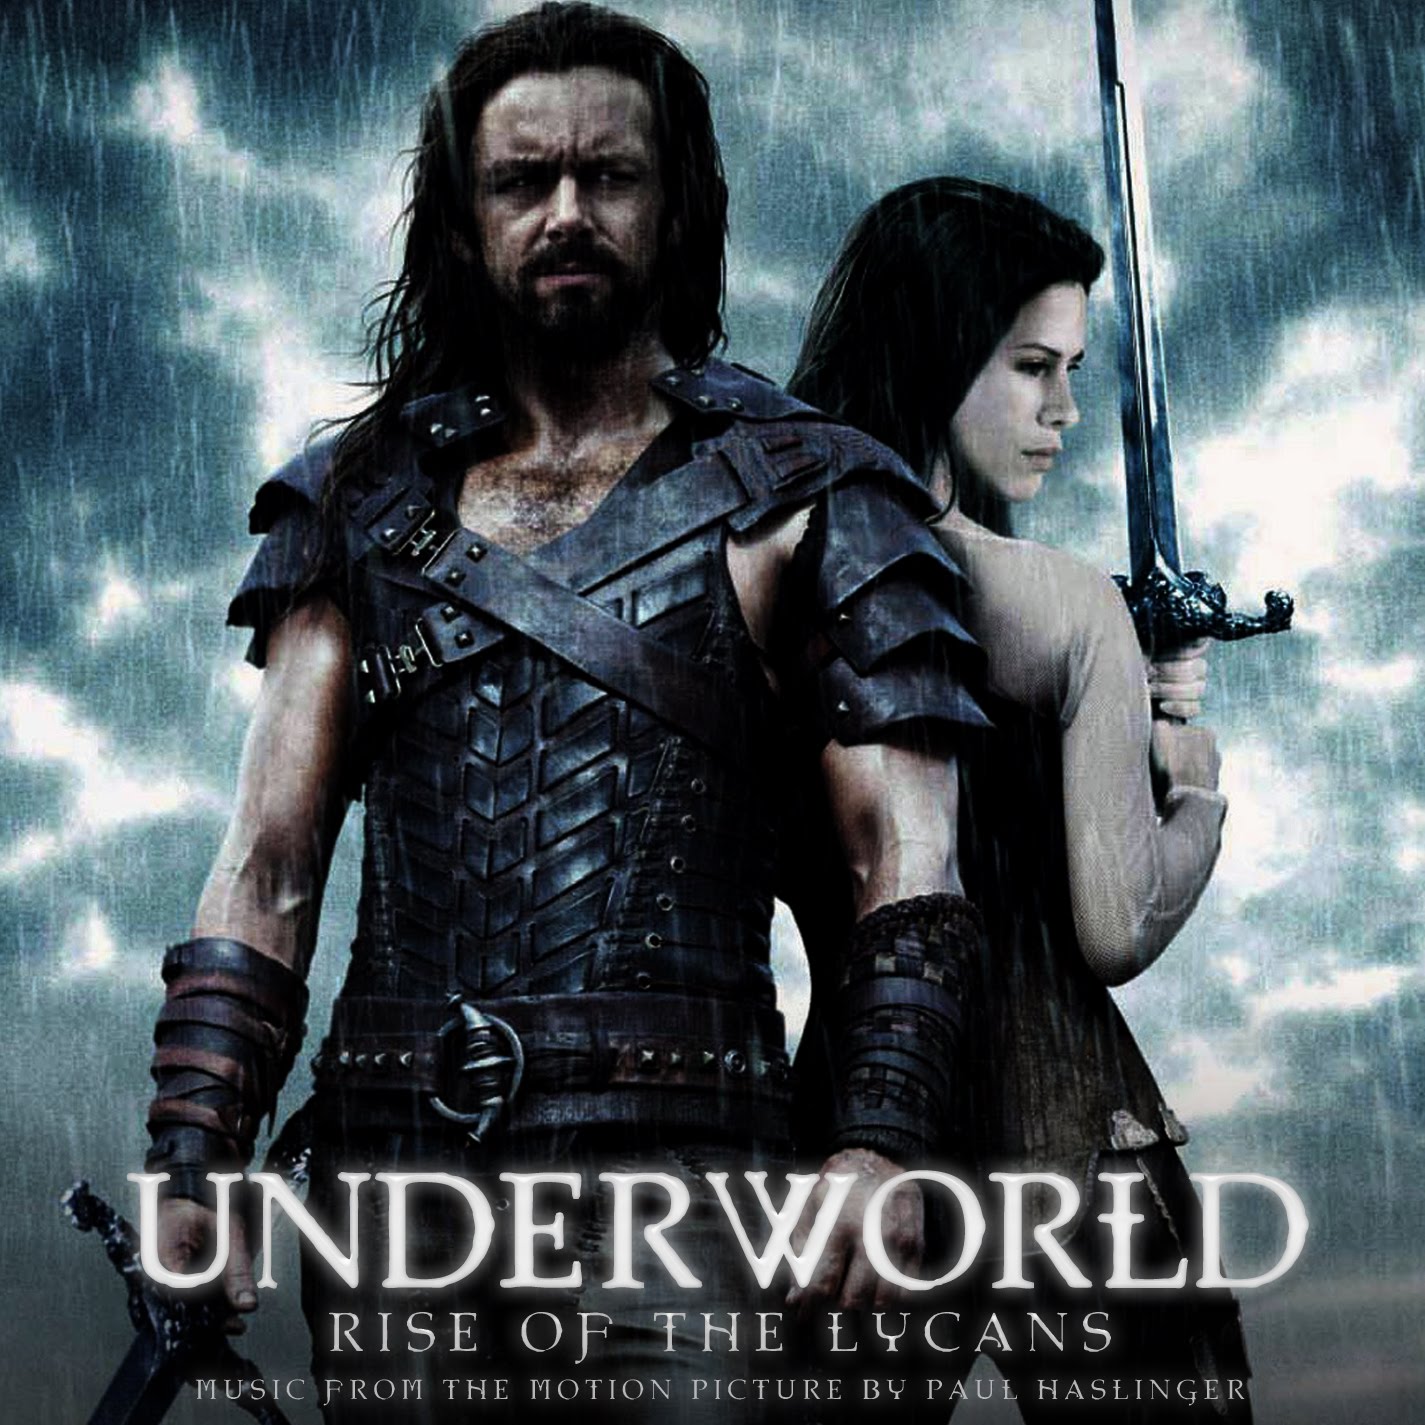 D Underworld 2 Full Movie Download Hd Utorrent